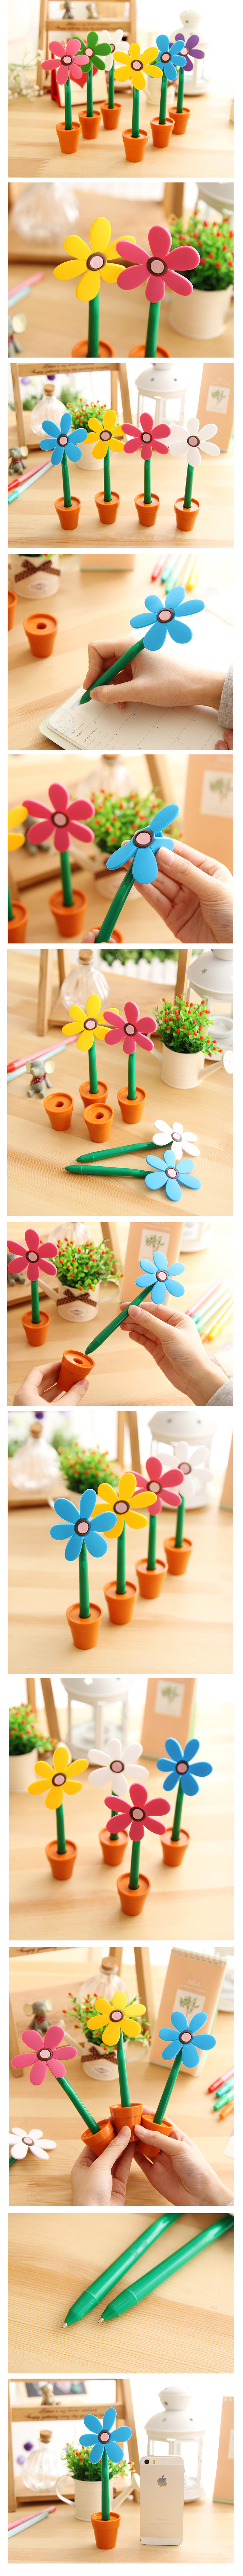 YF01日韓文具 創意太陽花圓珠筆/花盆造型可愛筆